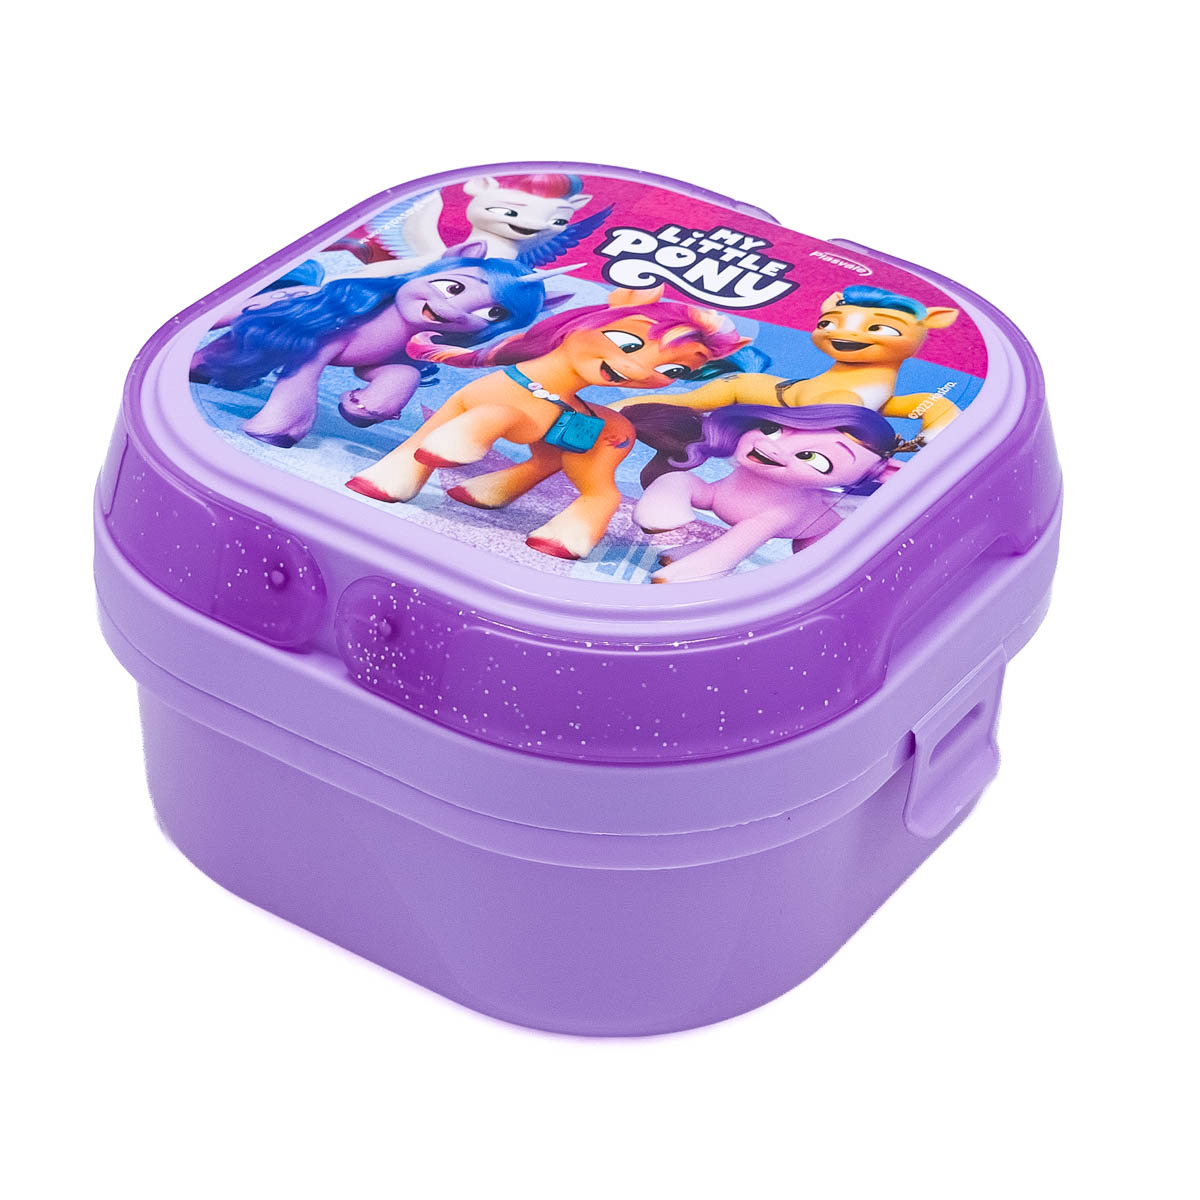 Imagem do produto: Marmita com 2 compartimentos, Trava e Alças My Little Pony 